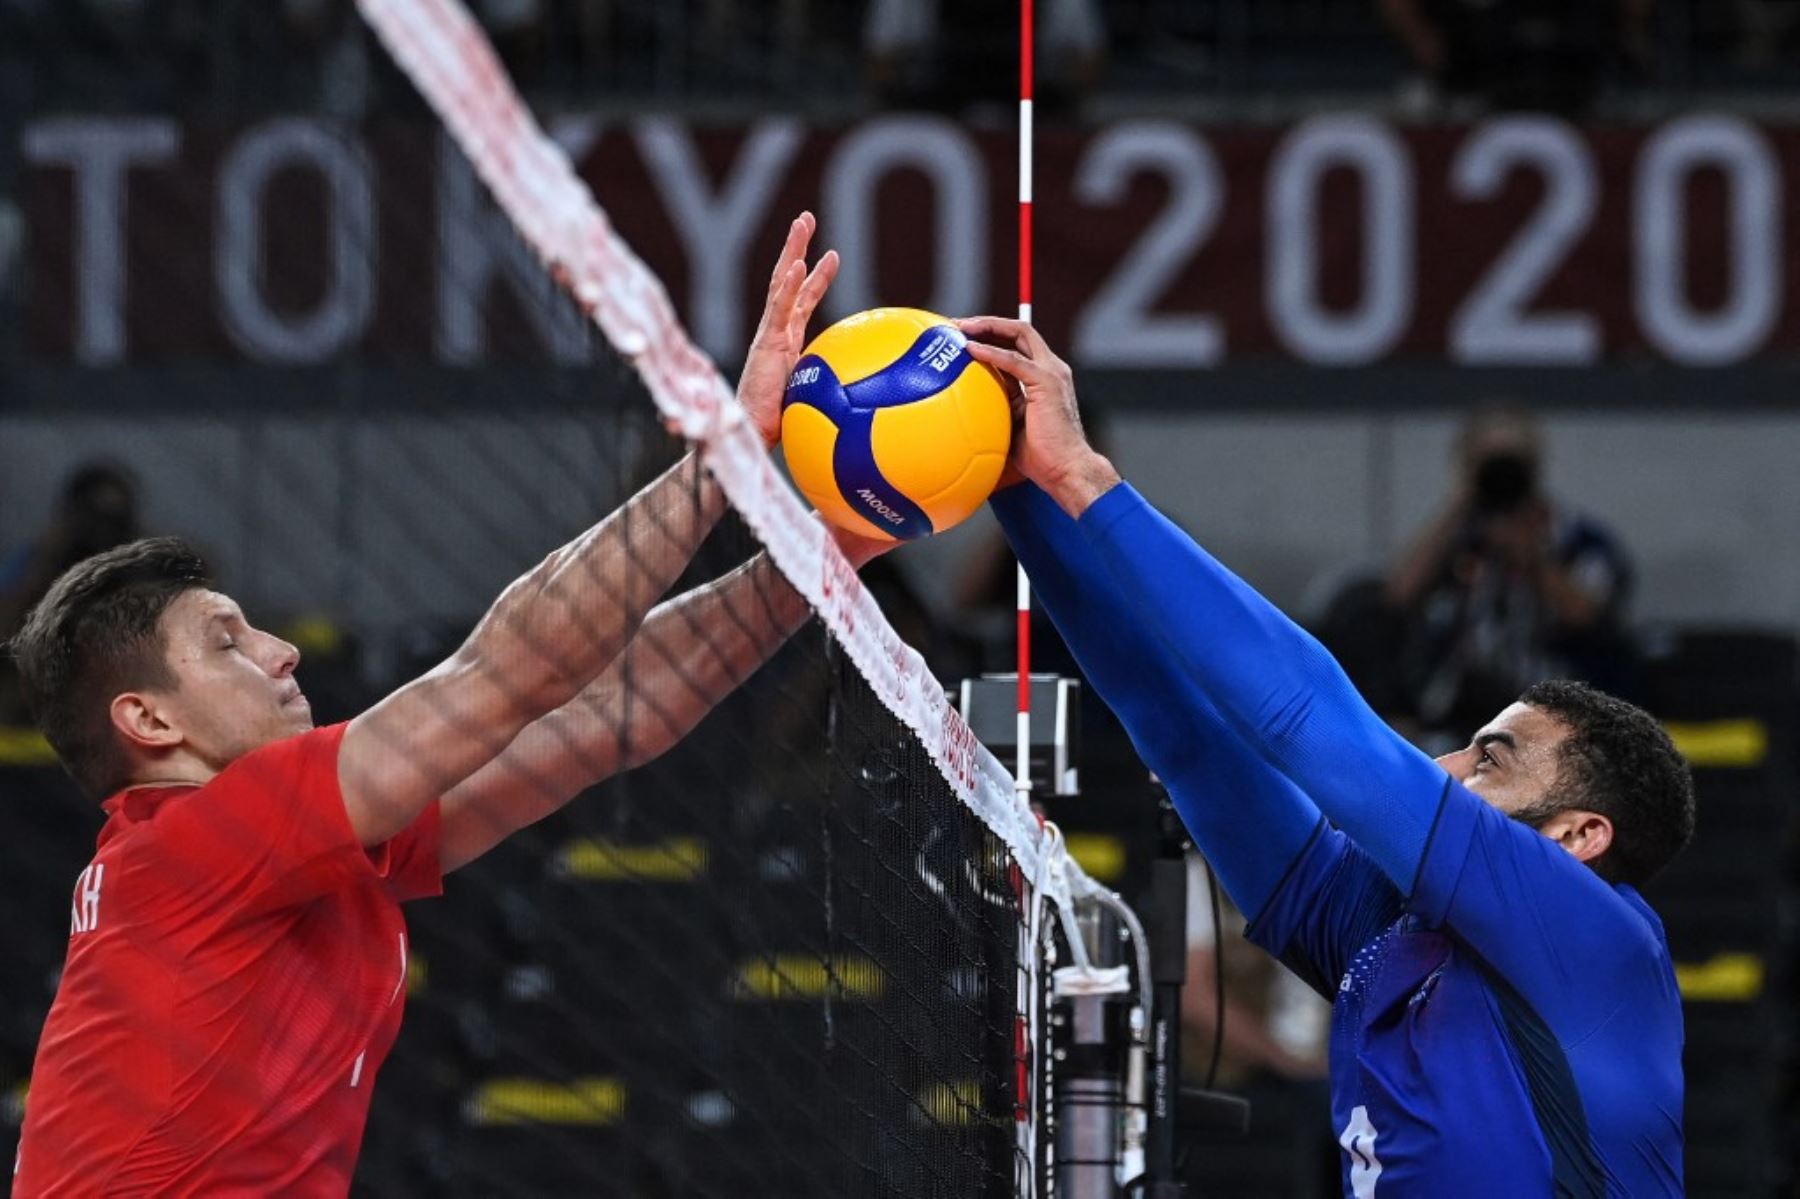 Tokyo 2020 : la France décroche sa première médaille d’or en volley masculin face aux Russes  Nouvelles